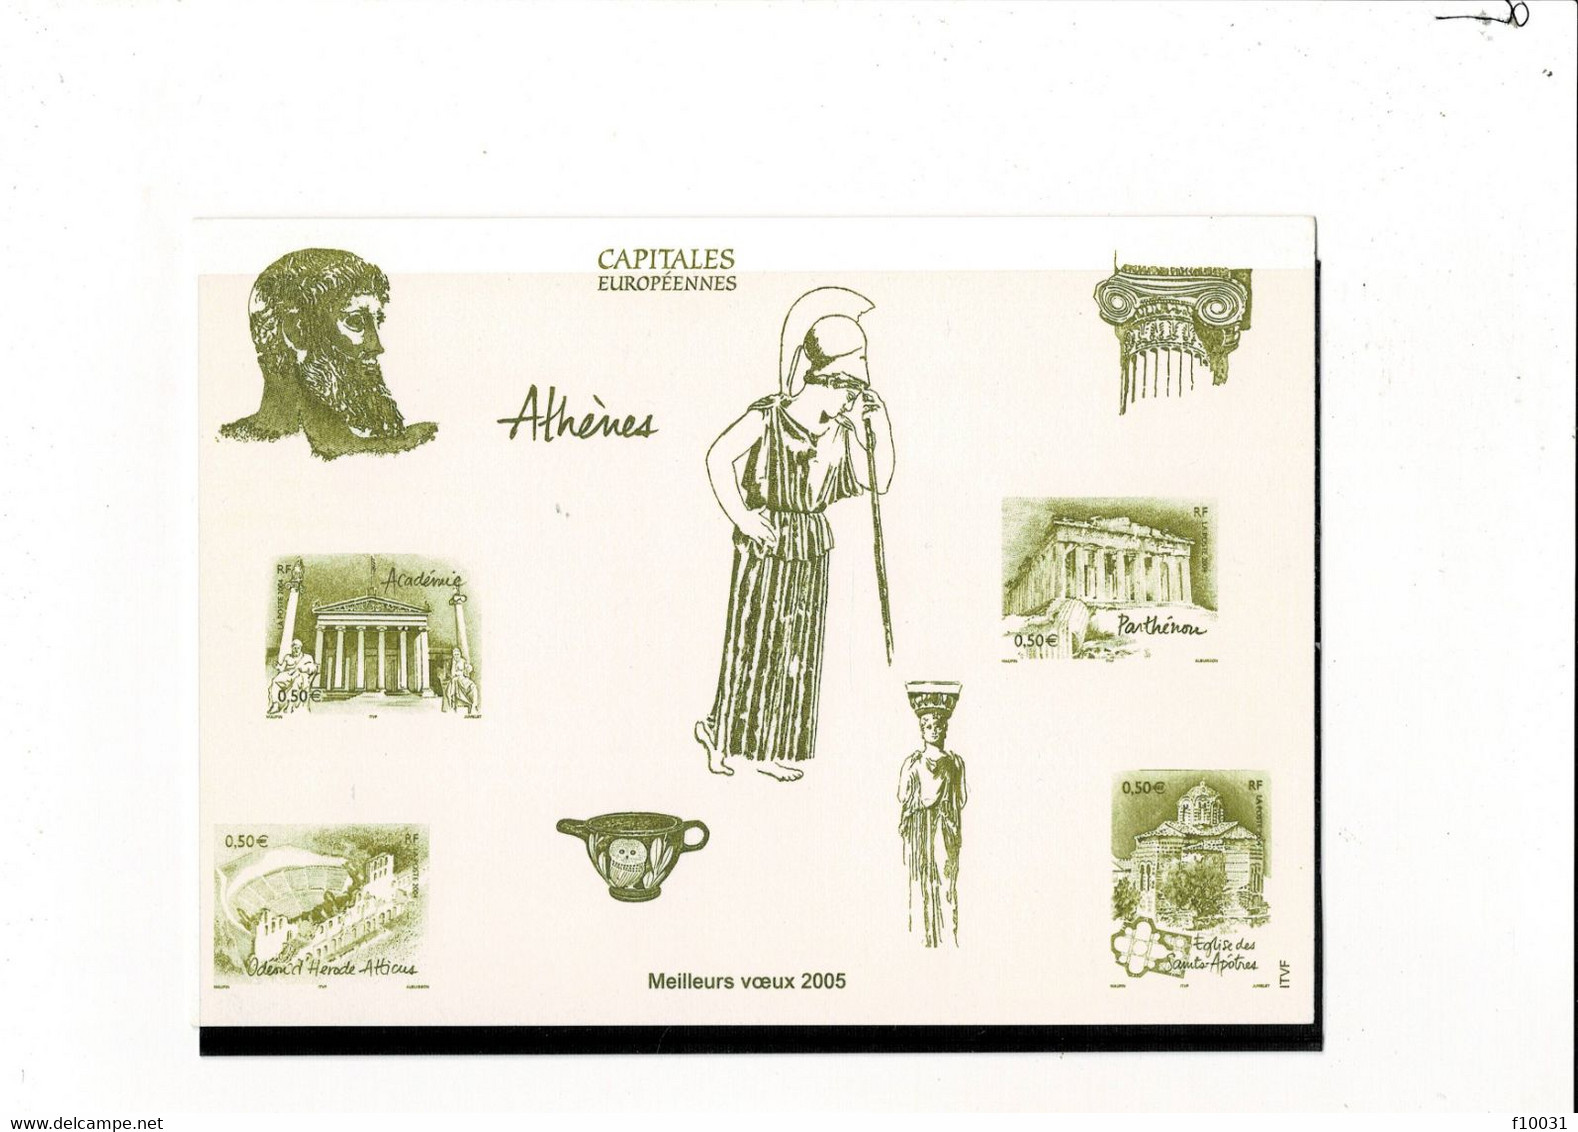 Capitales Européennes Athènes Meilleurs Voeux 2005 - Ensayos & Reimpresiones